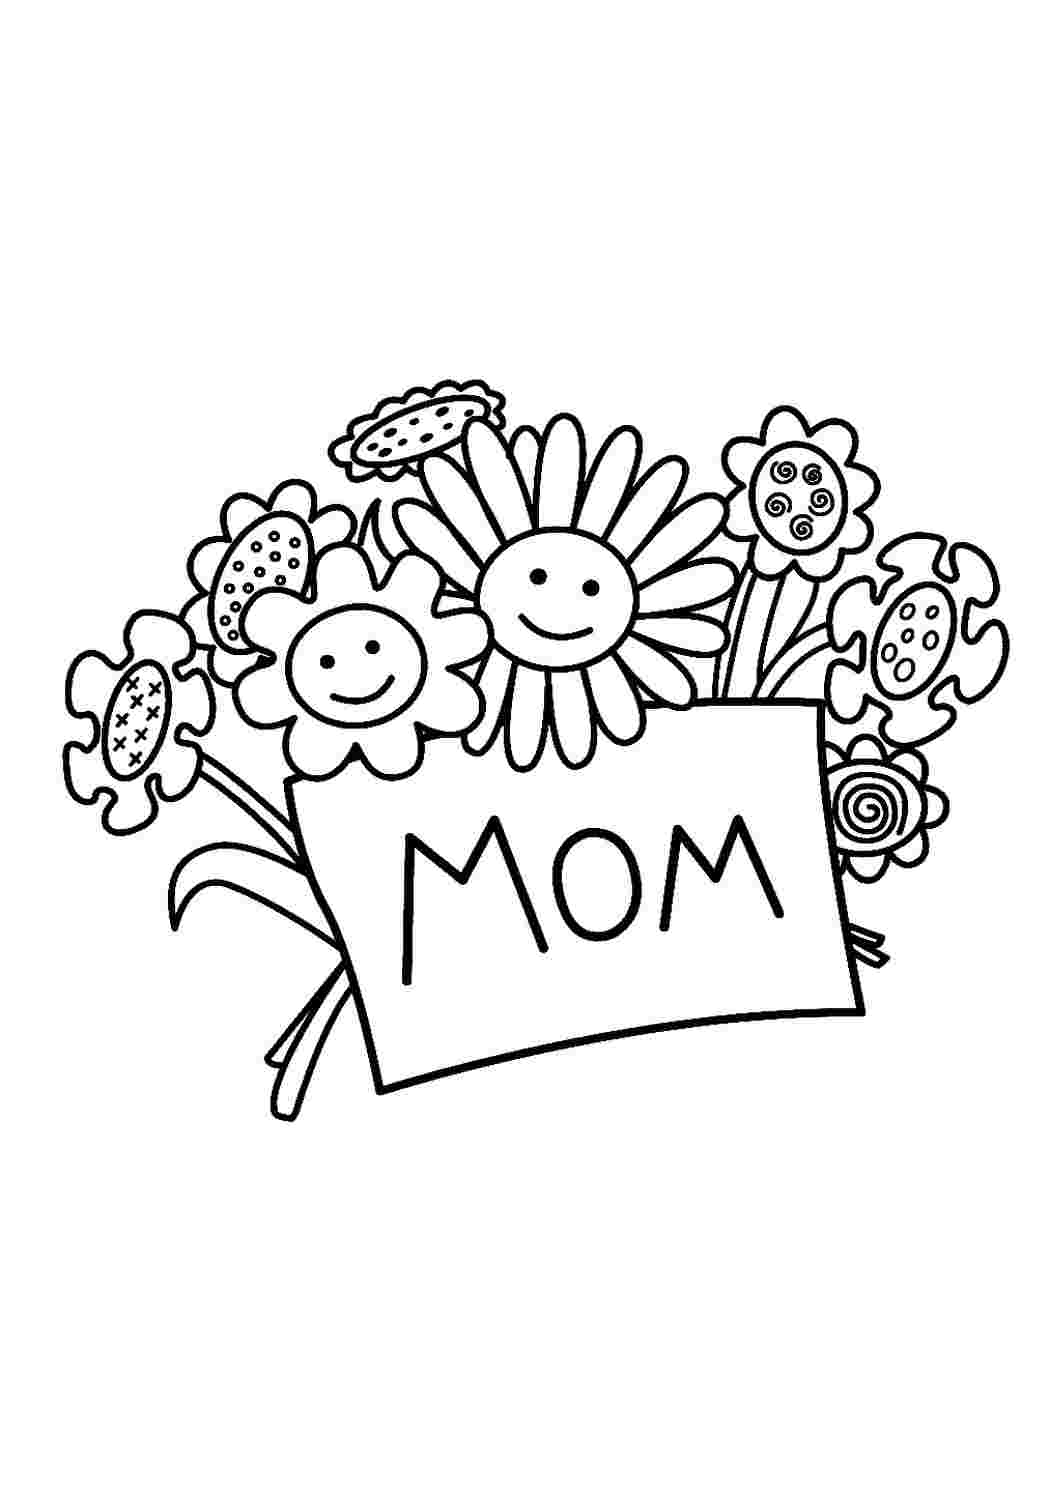 Раскраска день мамы. Раскраска ко Дню матери. Открытка для мамы раскраска. Рисунок для мамы раскраска. Раскраска с днем рождения мама.